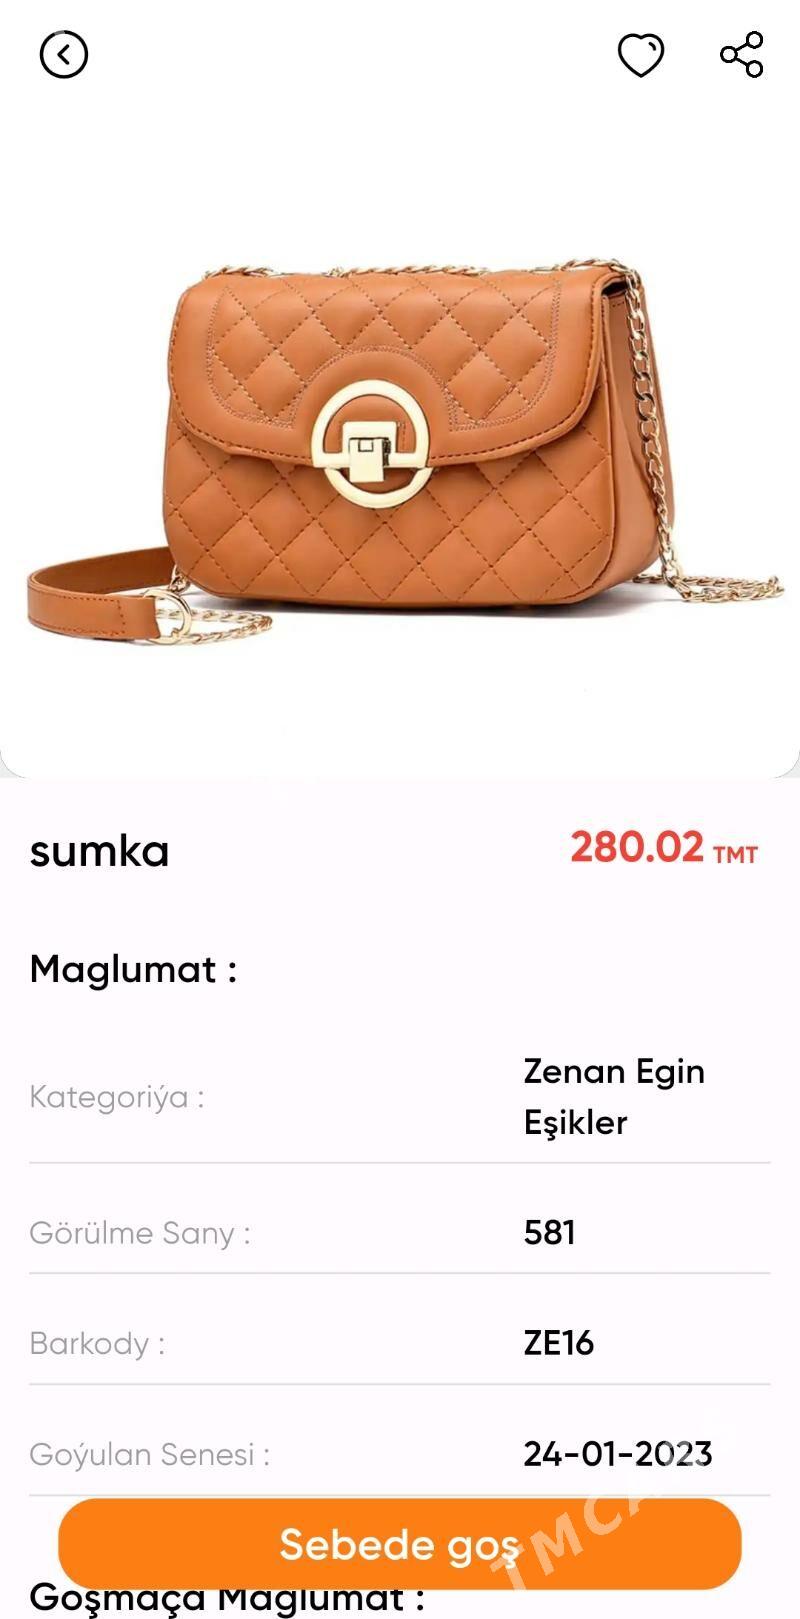 YAKA online market zenan egin-eşikler - Aşgabat - img 3